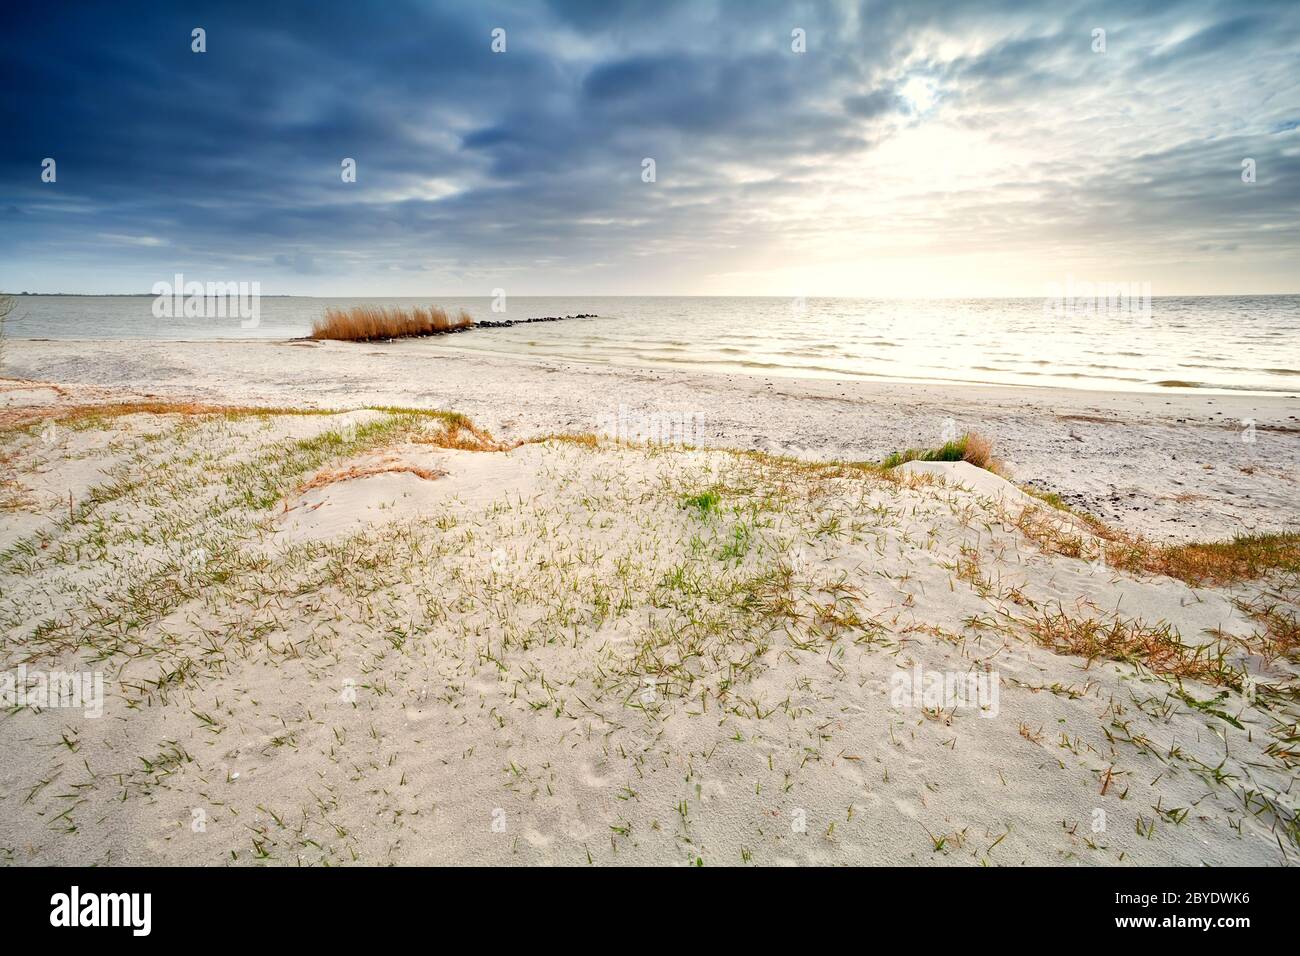 sand coast by Ijsselmeer, Hindeloopen Stock Photo